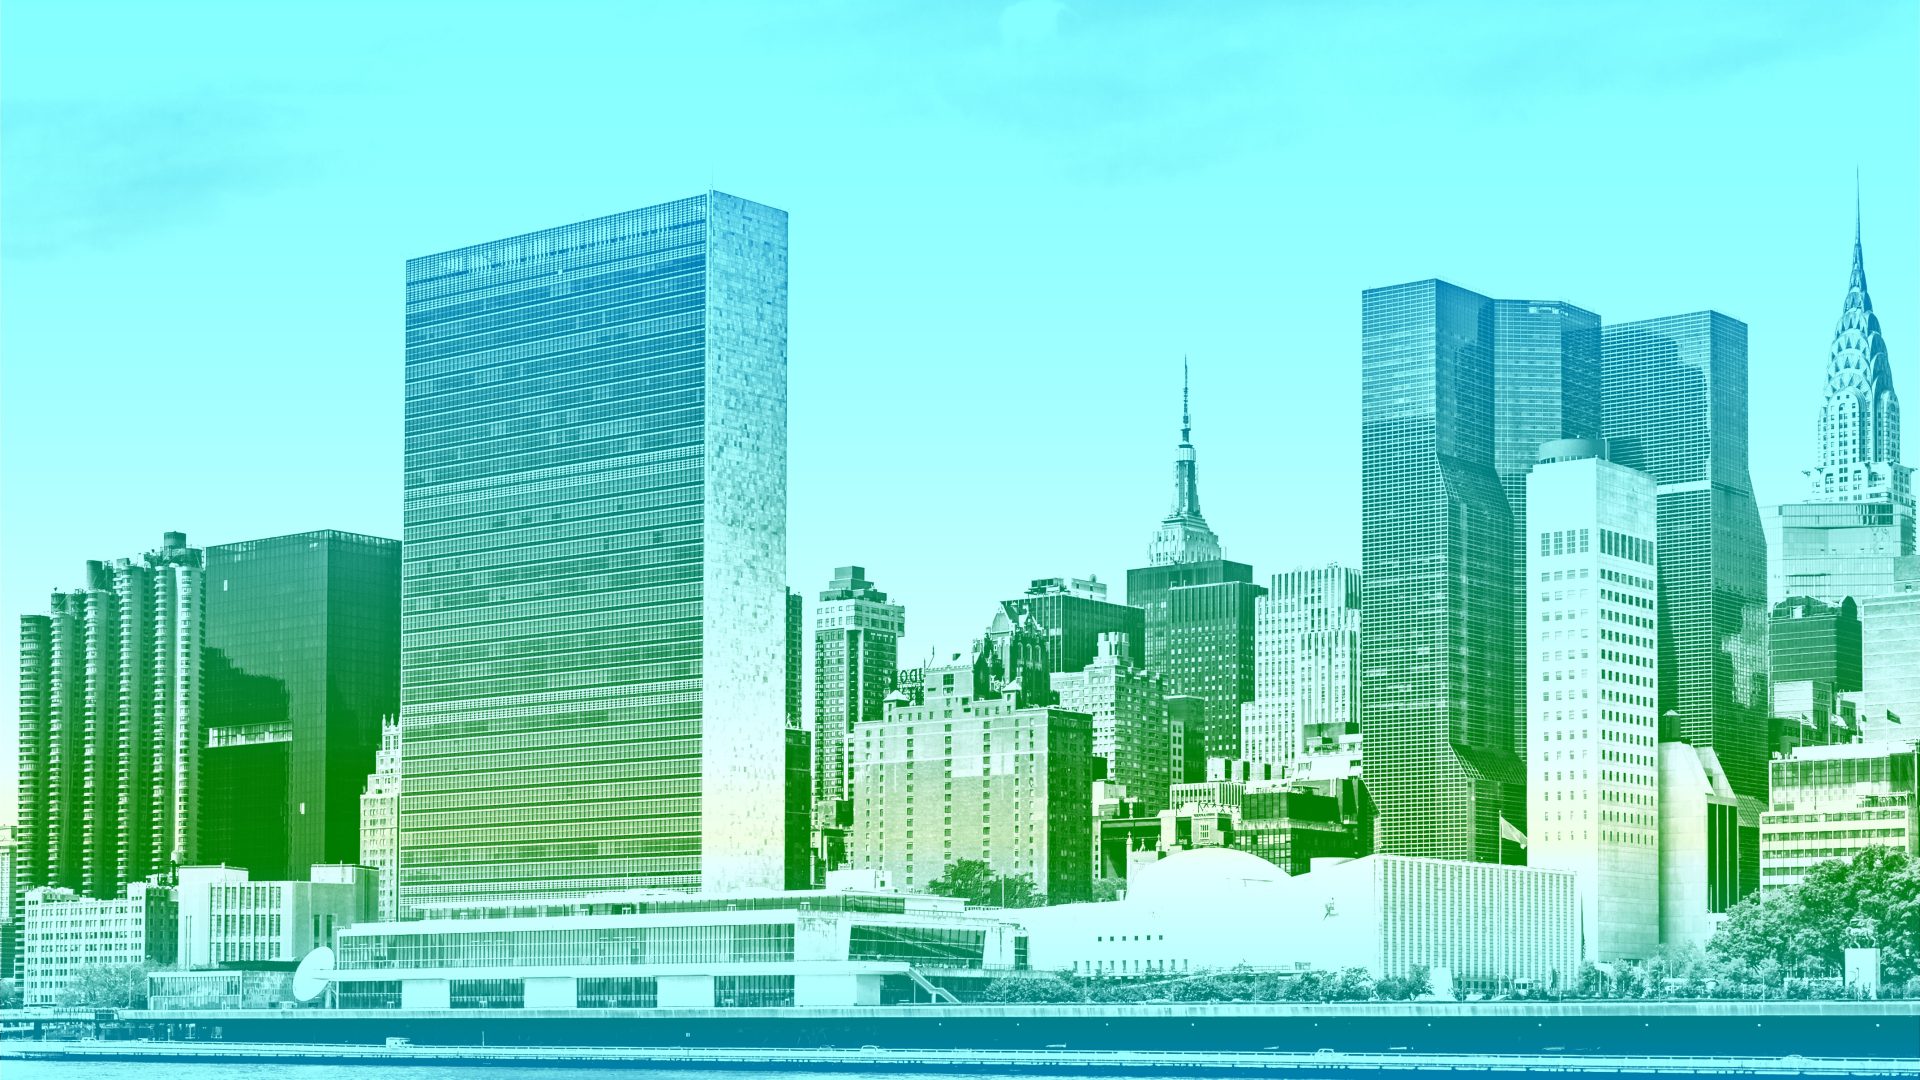 منظر لأفق مانهاتن من جزيرة روزفلت ، مع مبنى الأمم المتحدة في المقدمة ومباني إمباير ستيت وكرايسلر مرئية.